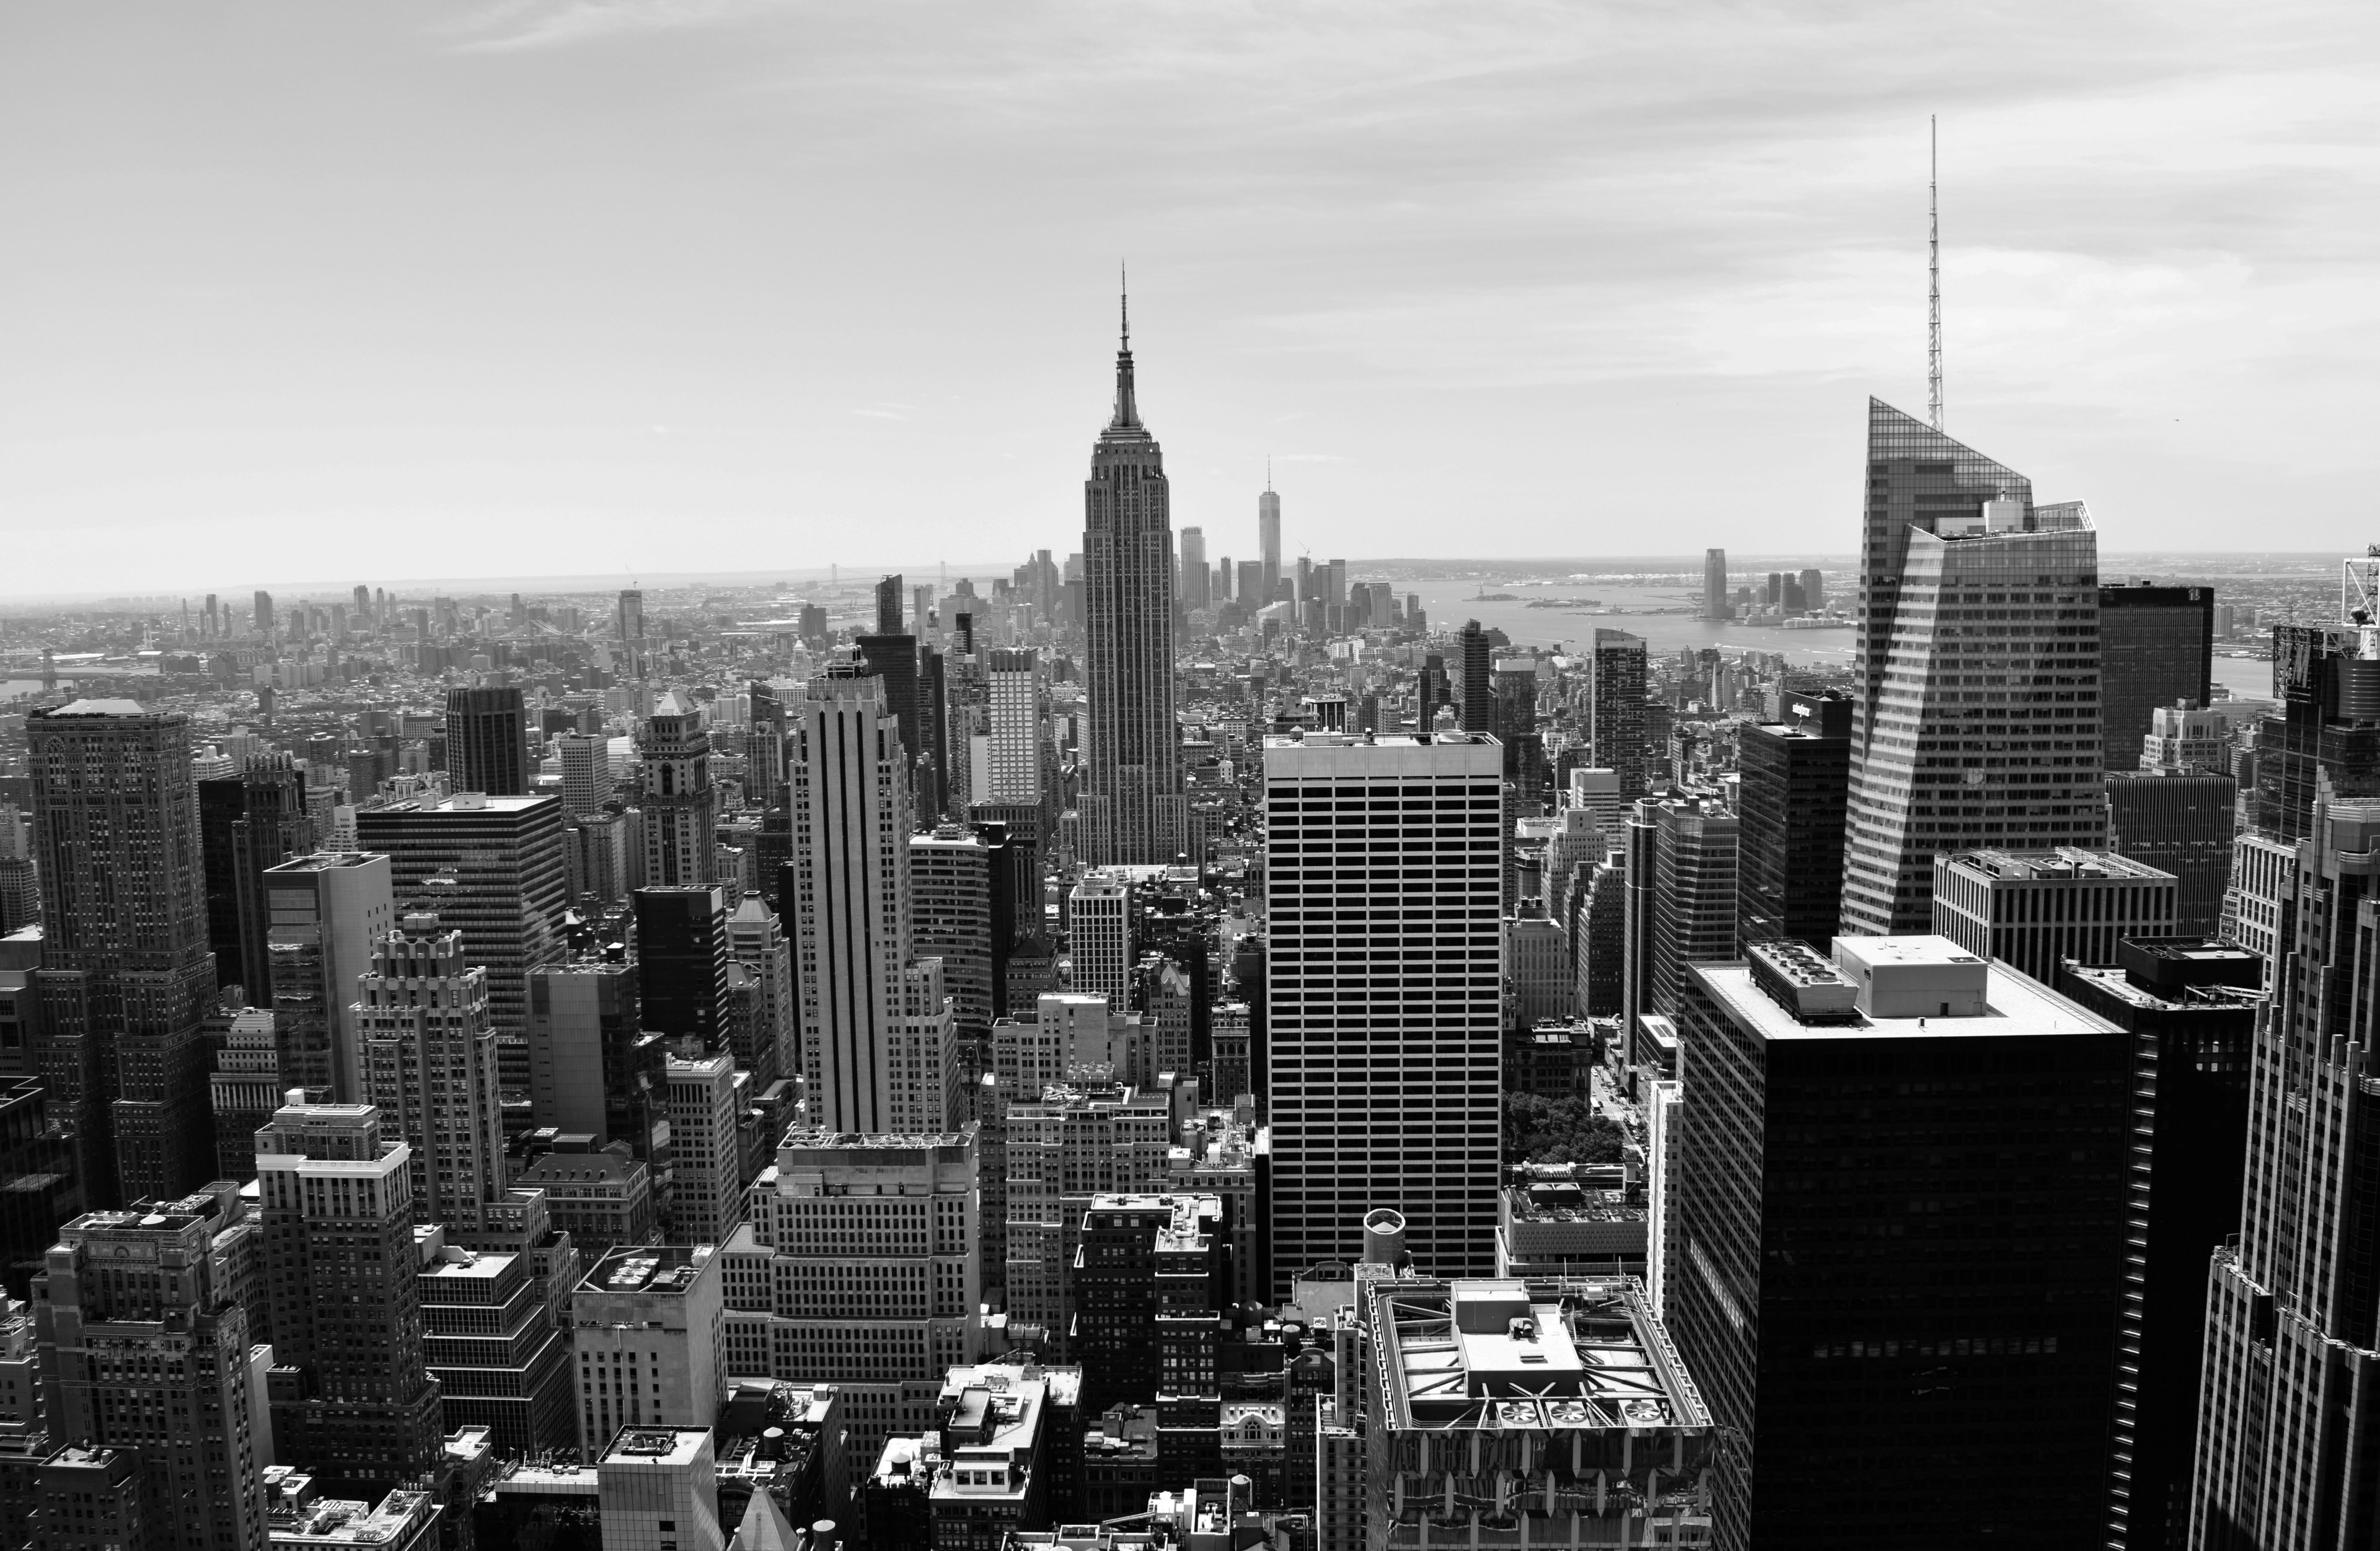 paisaje urbano fondos de pantalla en blanco y negro,ciudad,área metropolitana,paisaje urbano,área urbana,rascacielos